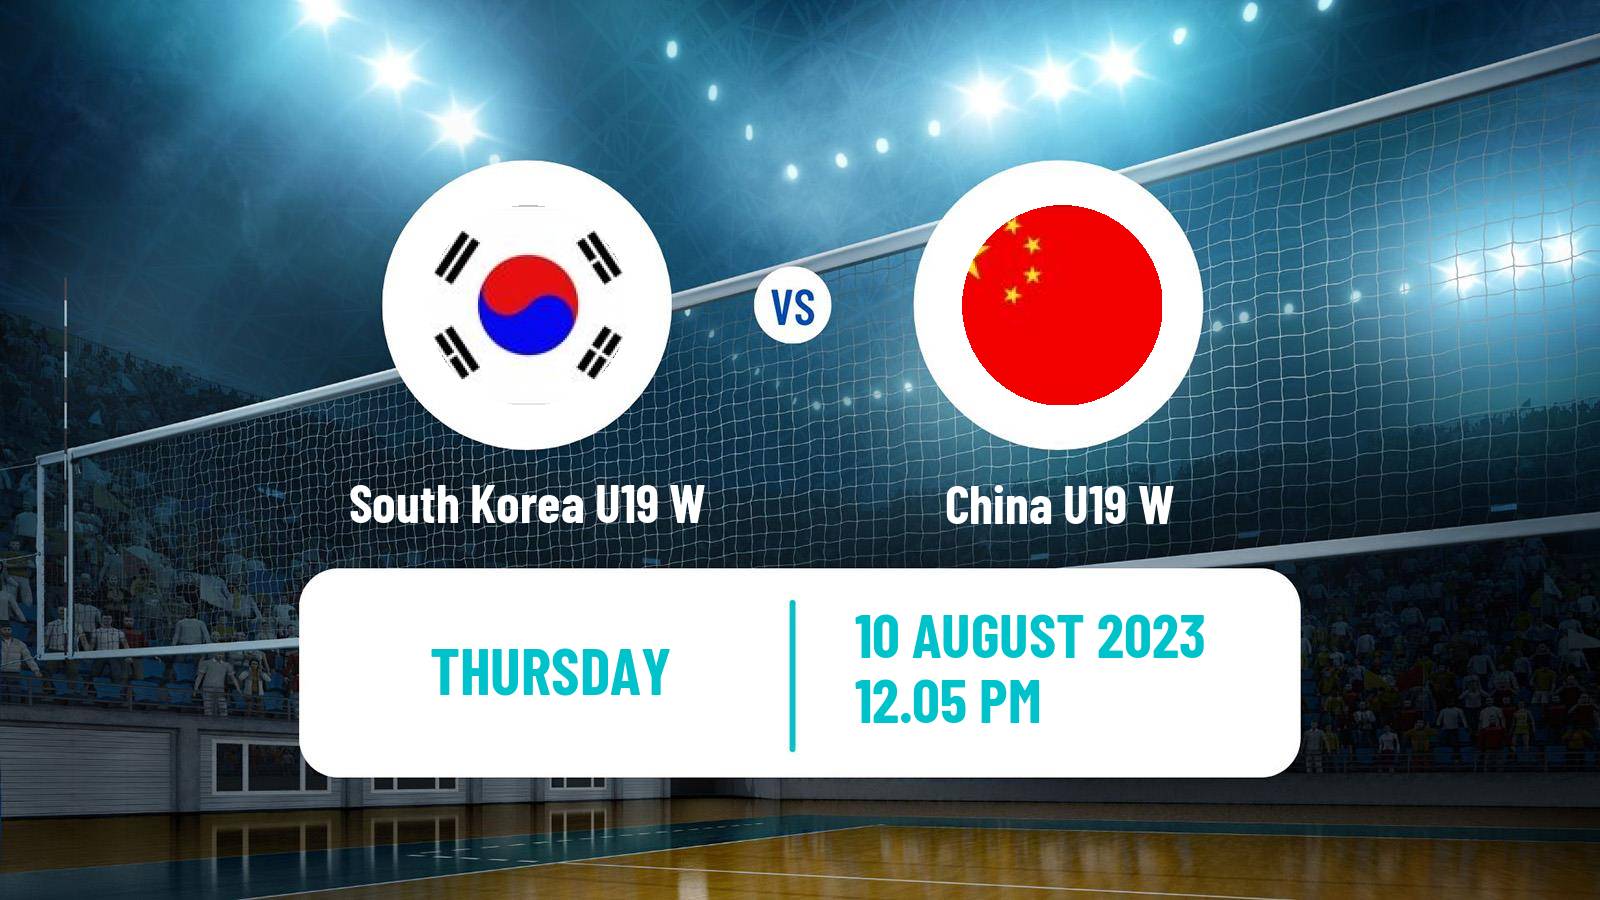 Volleyball World Championship U19 Volleyball Women South Korea U19 W - China U19 W